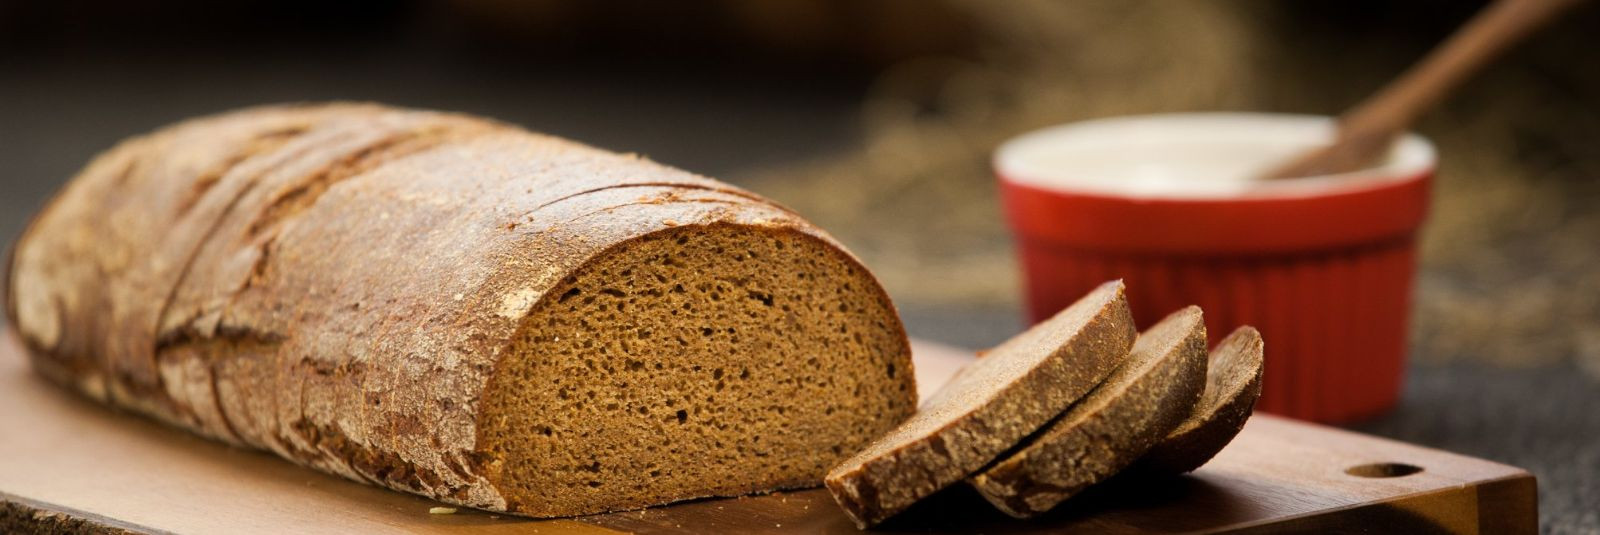 Eesti Leivatööstus on pühendunud tervisliku ja kvaliteetse leiva valmistamisele, mida saab kasutada tervisliku ja täisväärtusliku hommikusöögi alusena. Meie täi